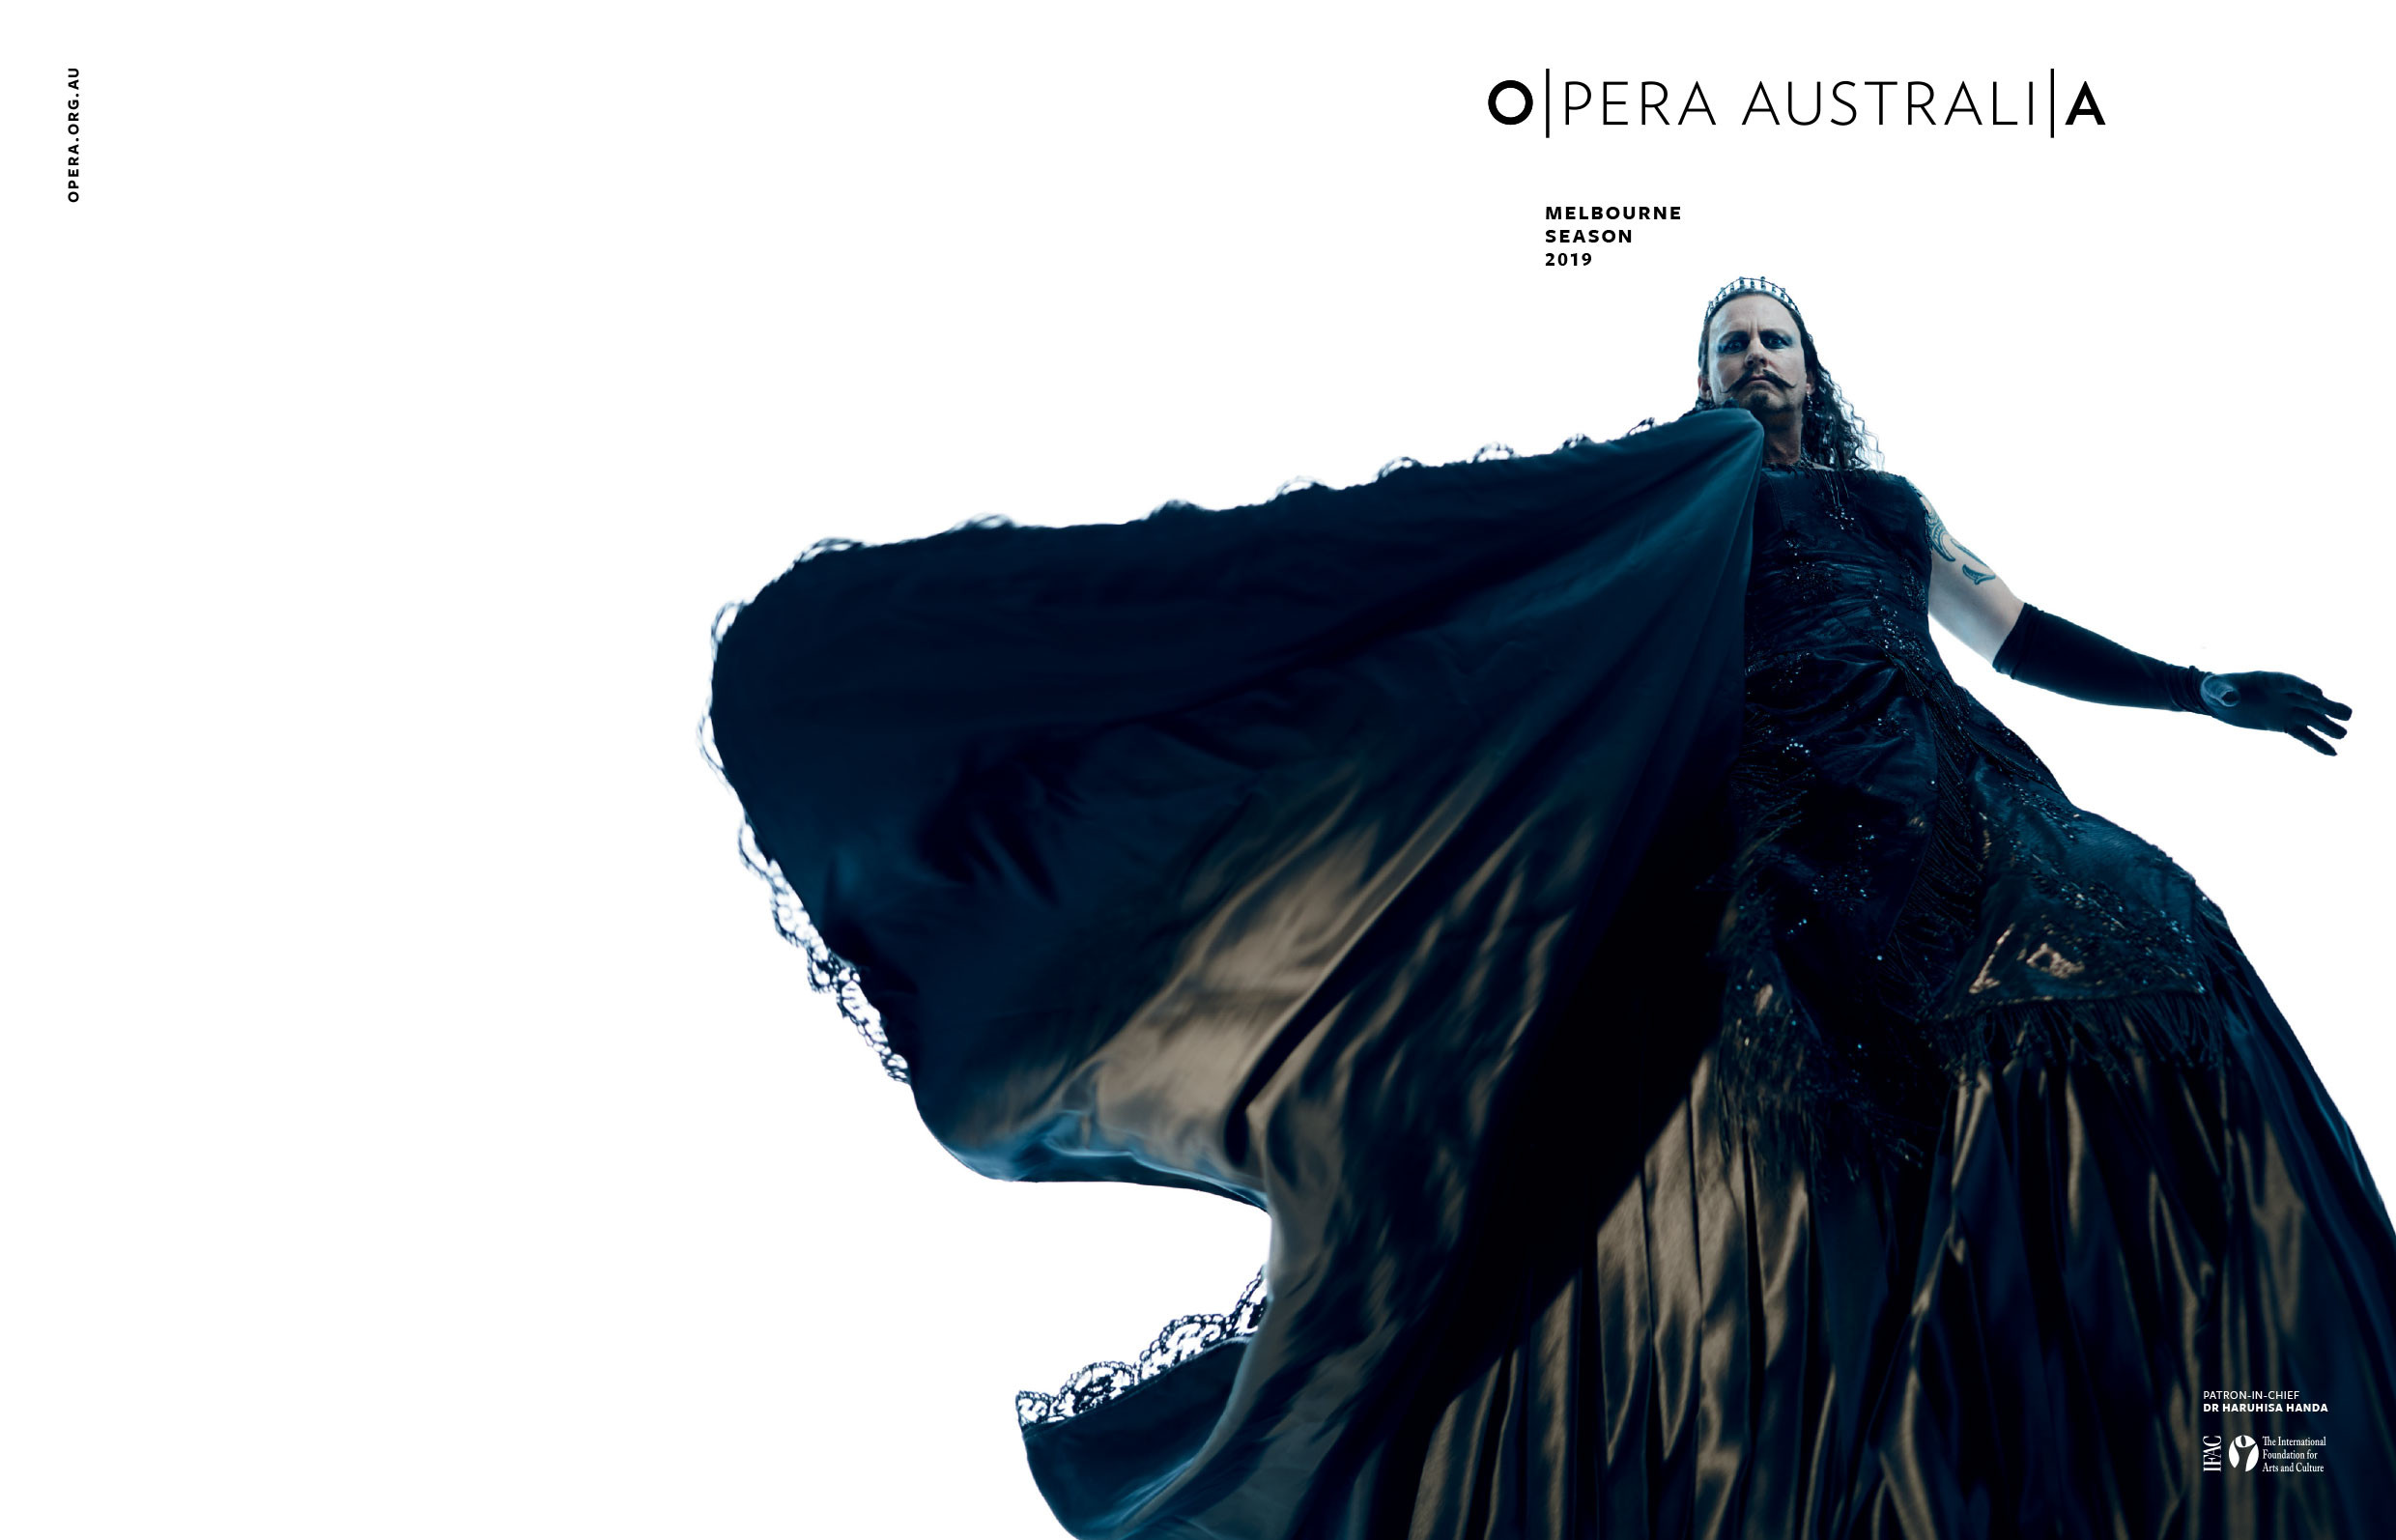 Season 19 - Opera Australia